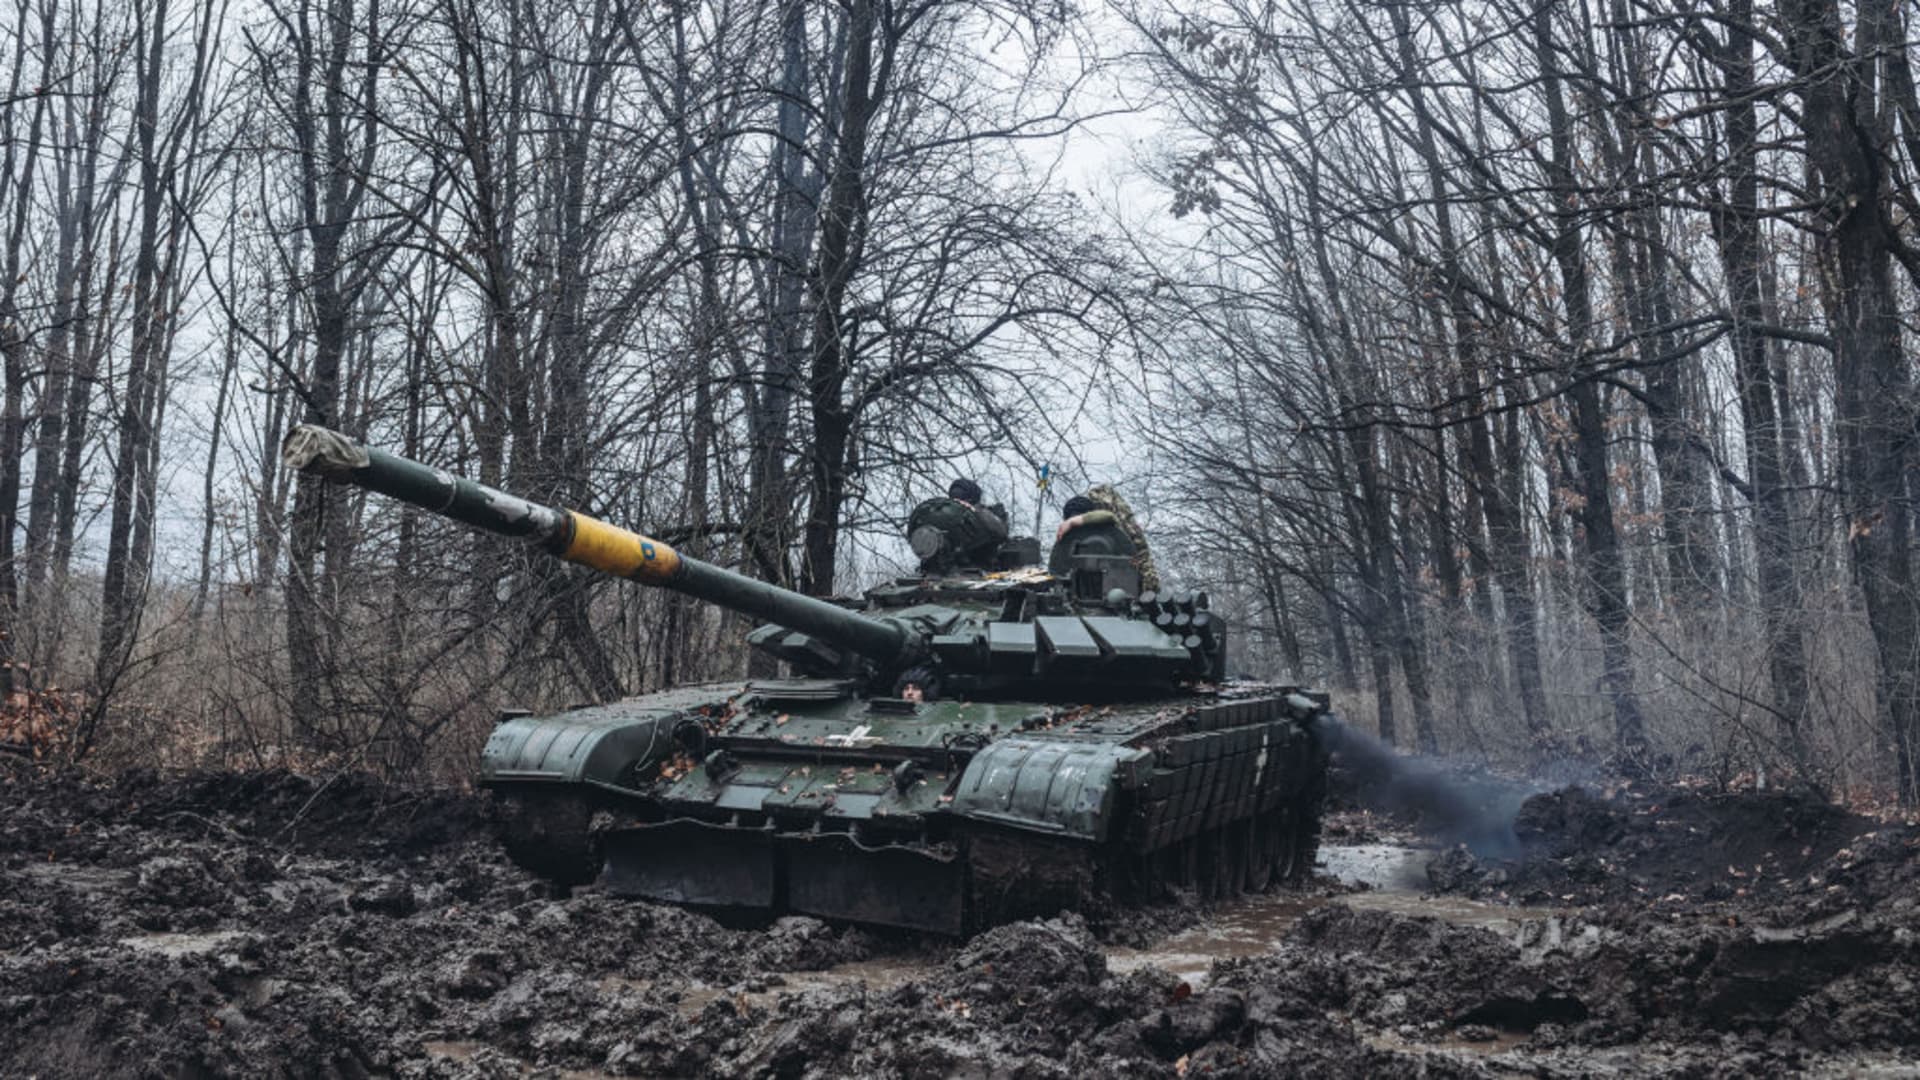 Ukrainian soldiers on the frontline in Donbass, Donetsk Oblast, Ukraine on November 22, 2022.